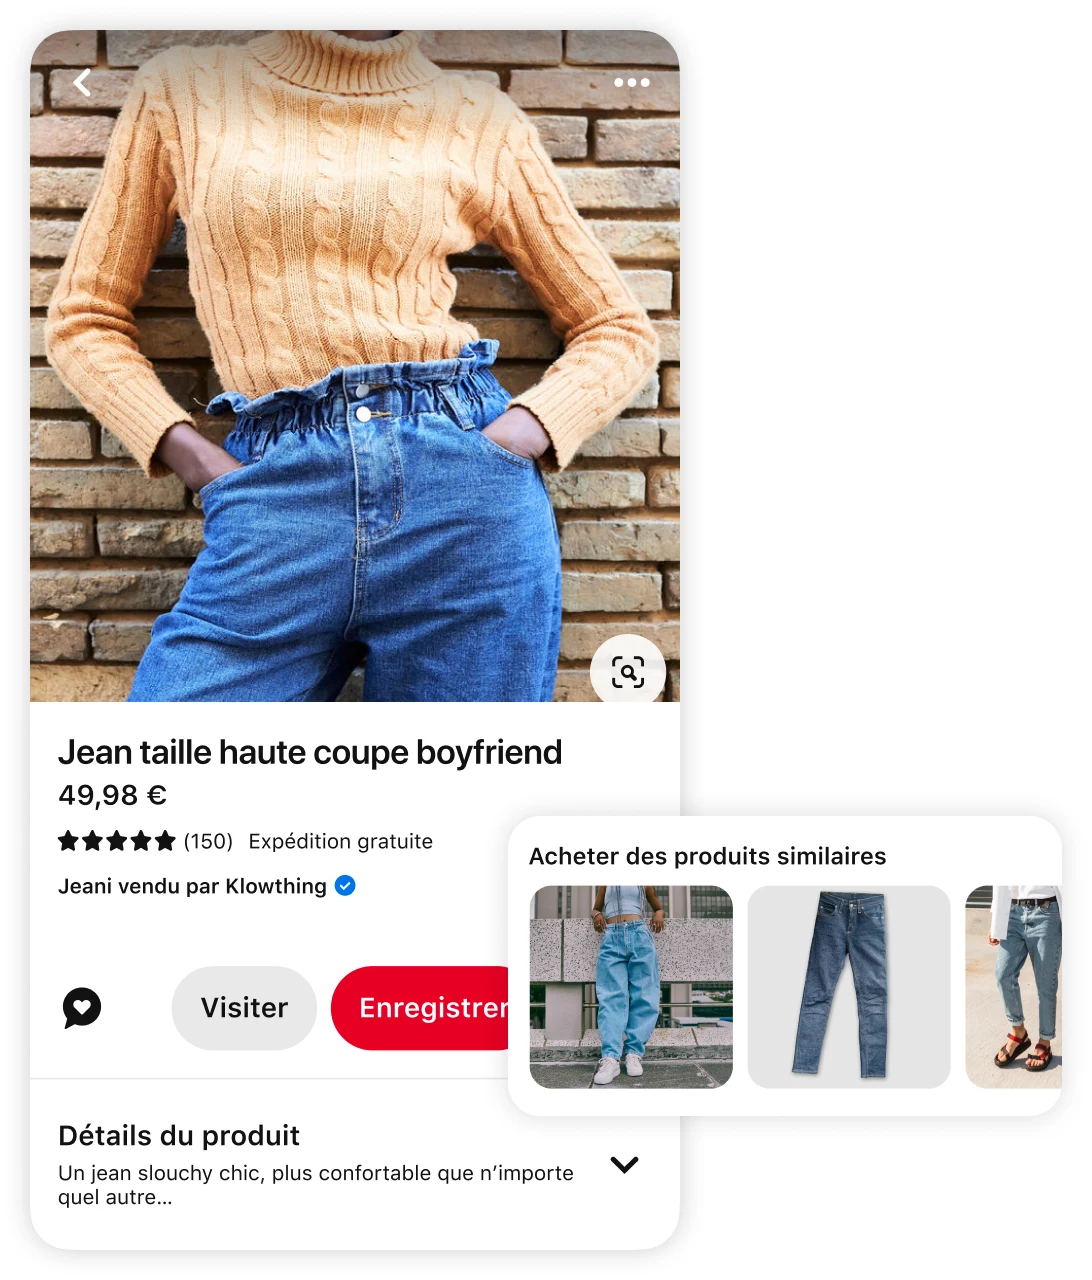 Épingle représentant une femme portant un pull orange torsadé et un jean boyfriend taille haute avec des suggestions de produits similaires et une invitation à « acheter des produits similaires »